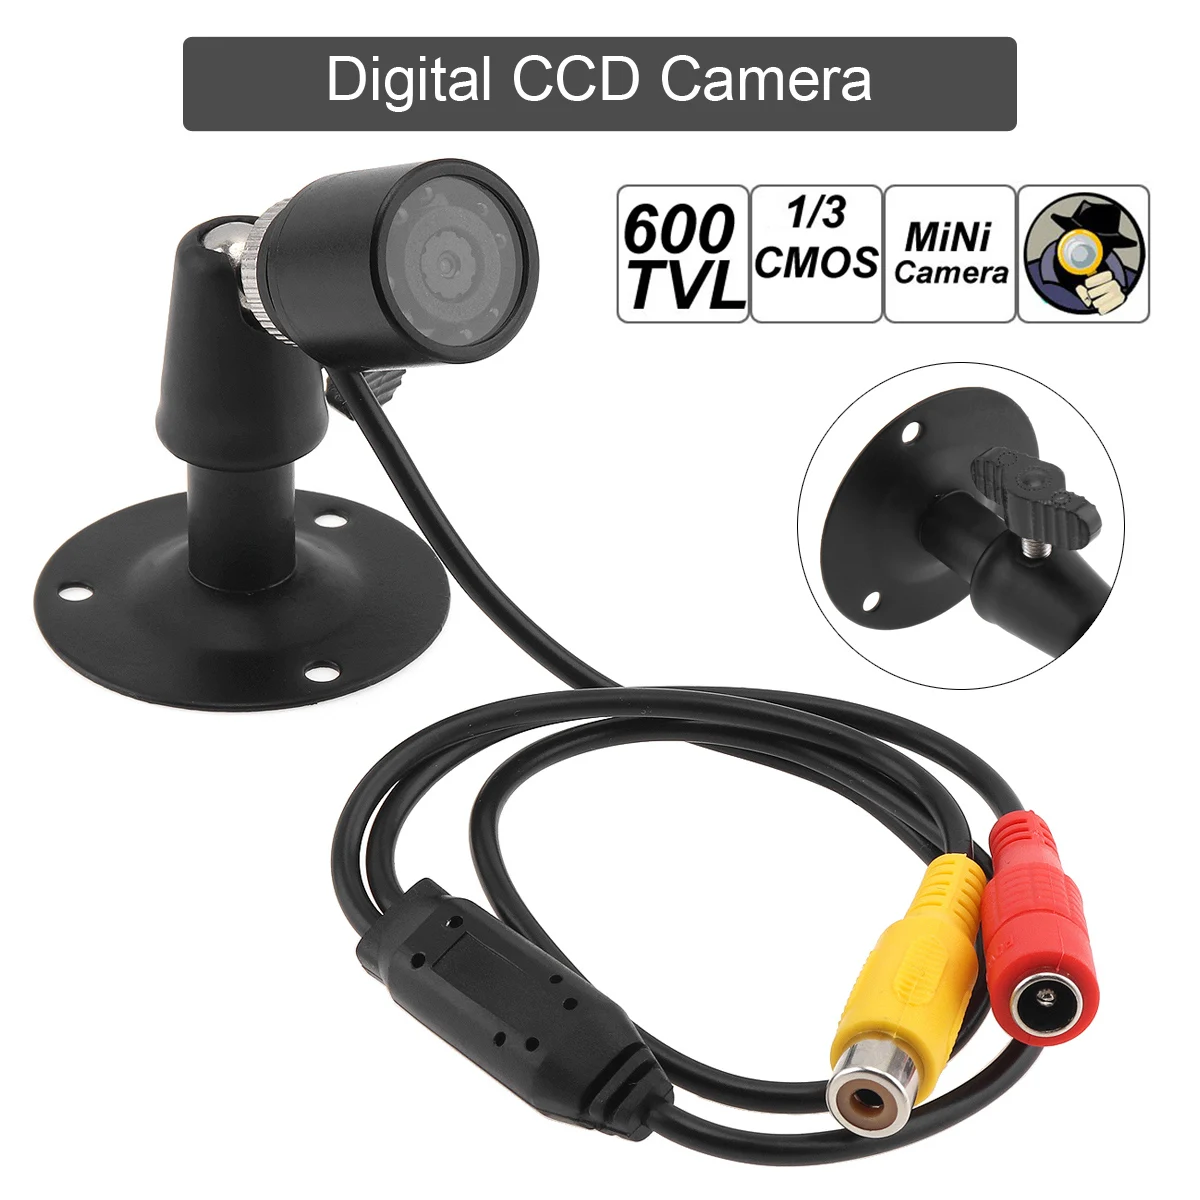 

600TVL Mini Camera Night Version Micro Camcorder DVR Remote Control Sensor Cam Video recorder small Camera for Monitoring